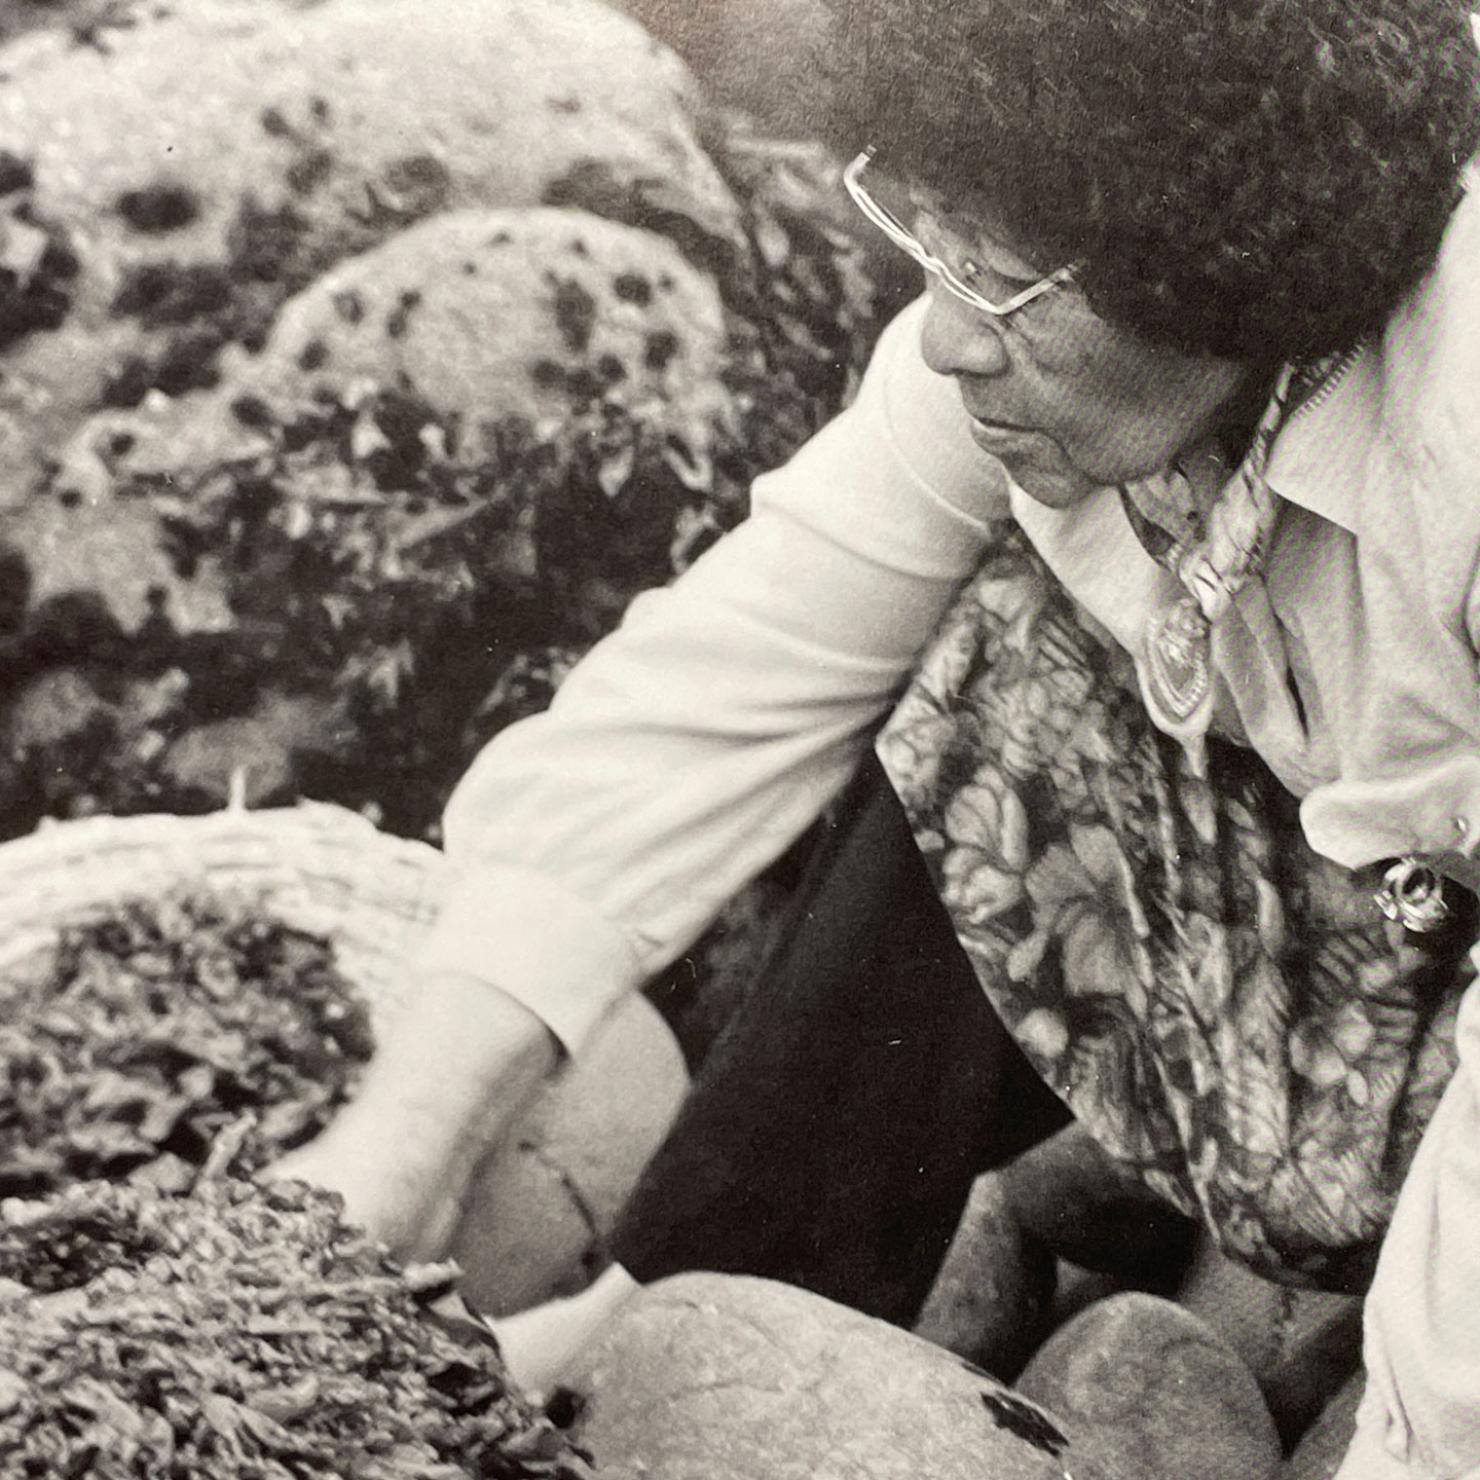 Rose McKay, Pomo, picking seaweed, 1982